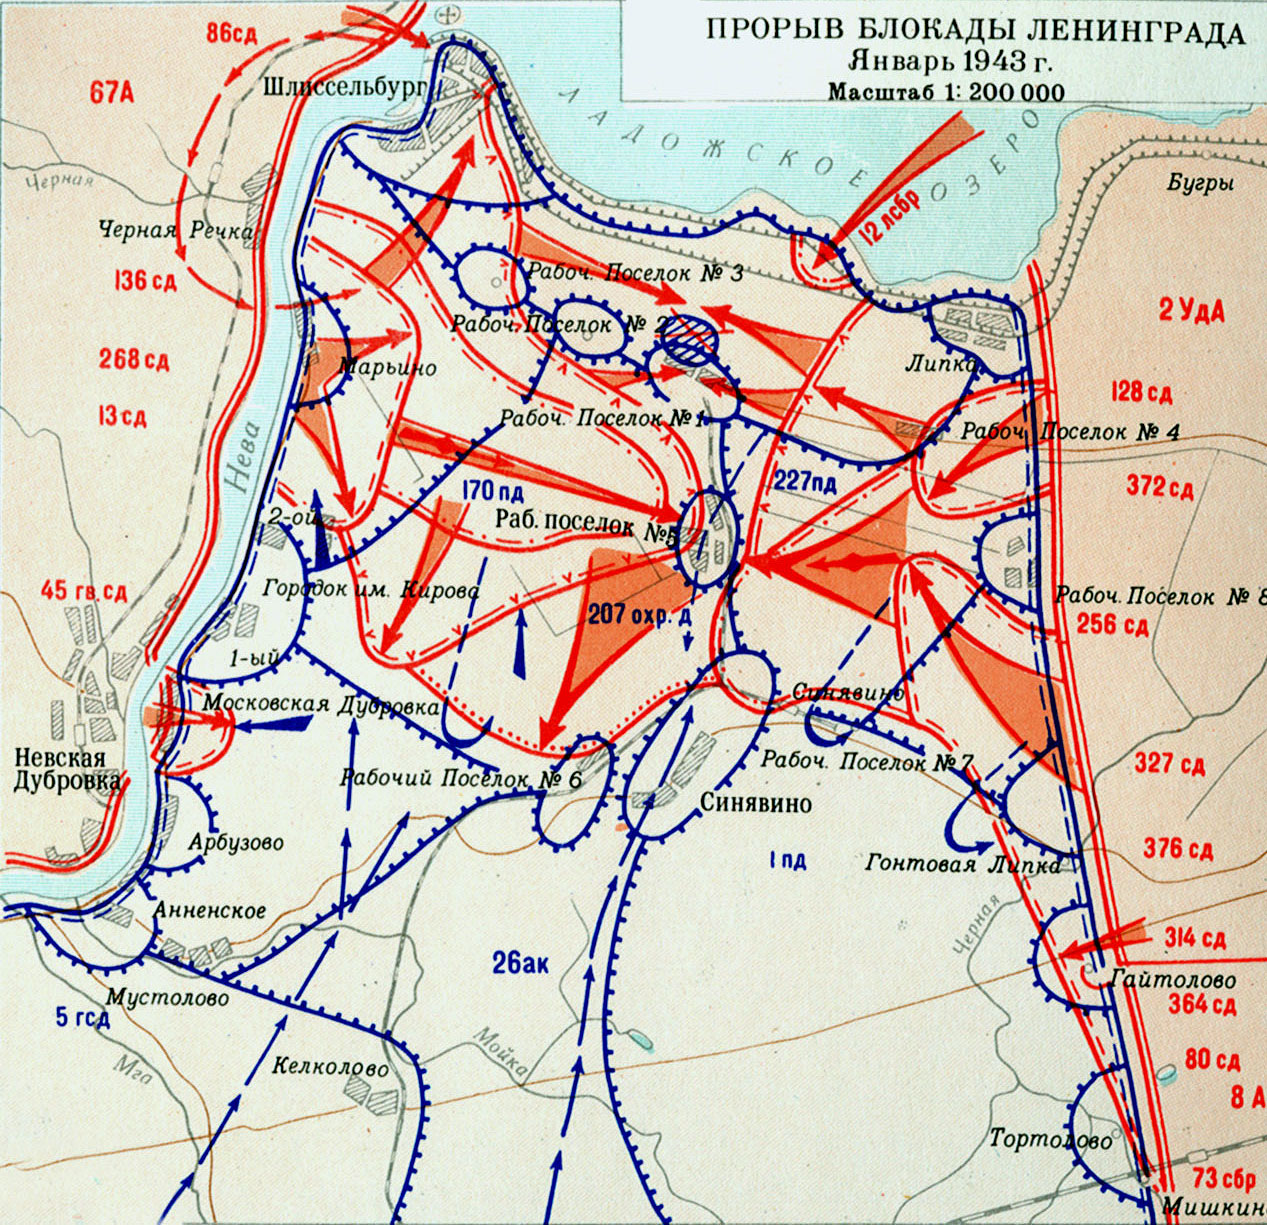 Прорыв блокады Ленинграда. Январь 1943 г.